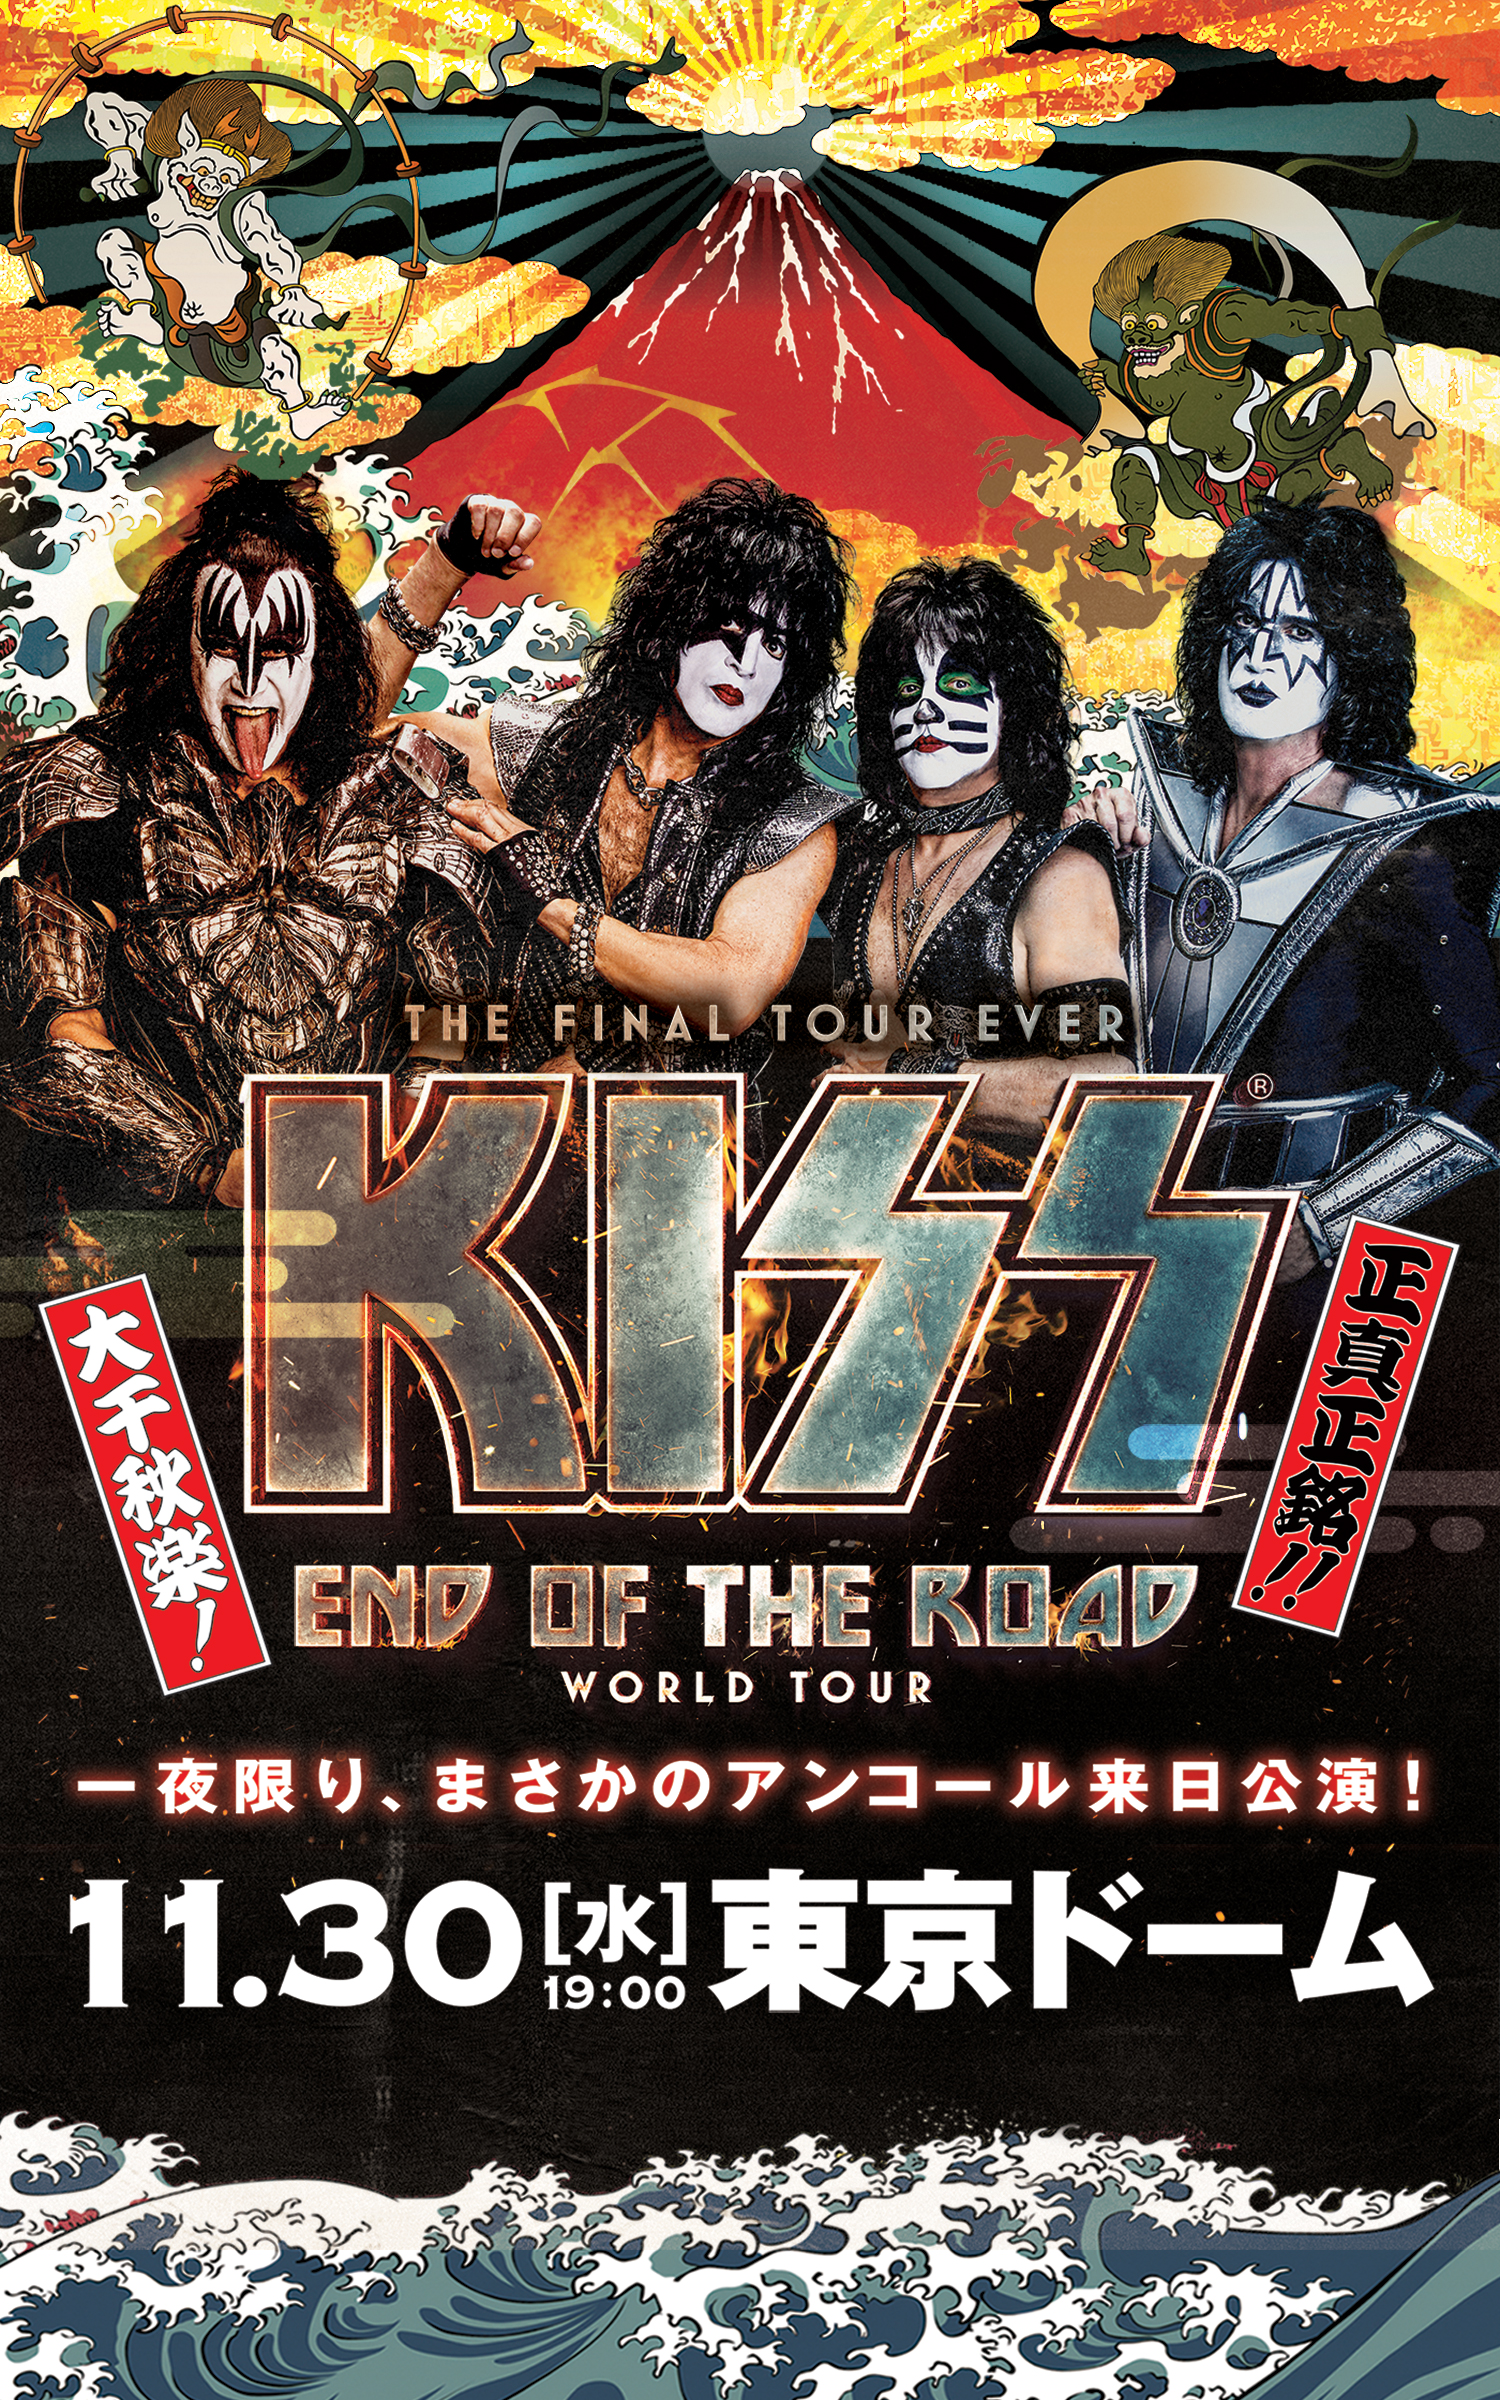 一夜限り、まさかのアンコール来日公演！ THE FINAL TOUR EVER KISS END OF THE ROAD WORLD TOUR 11.30(水)19:00 東京ドーム